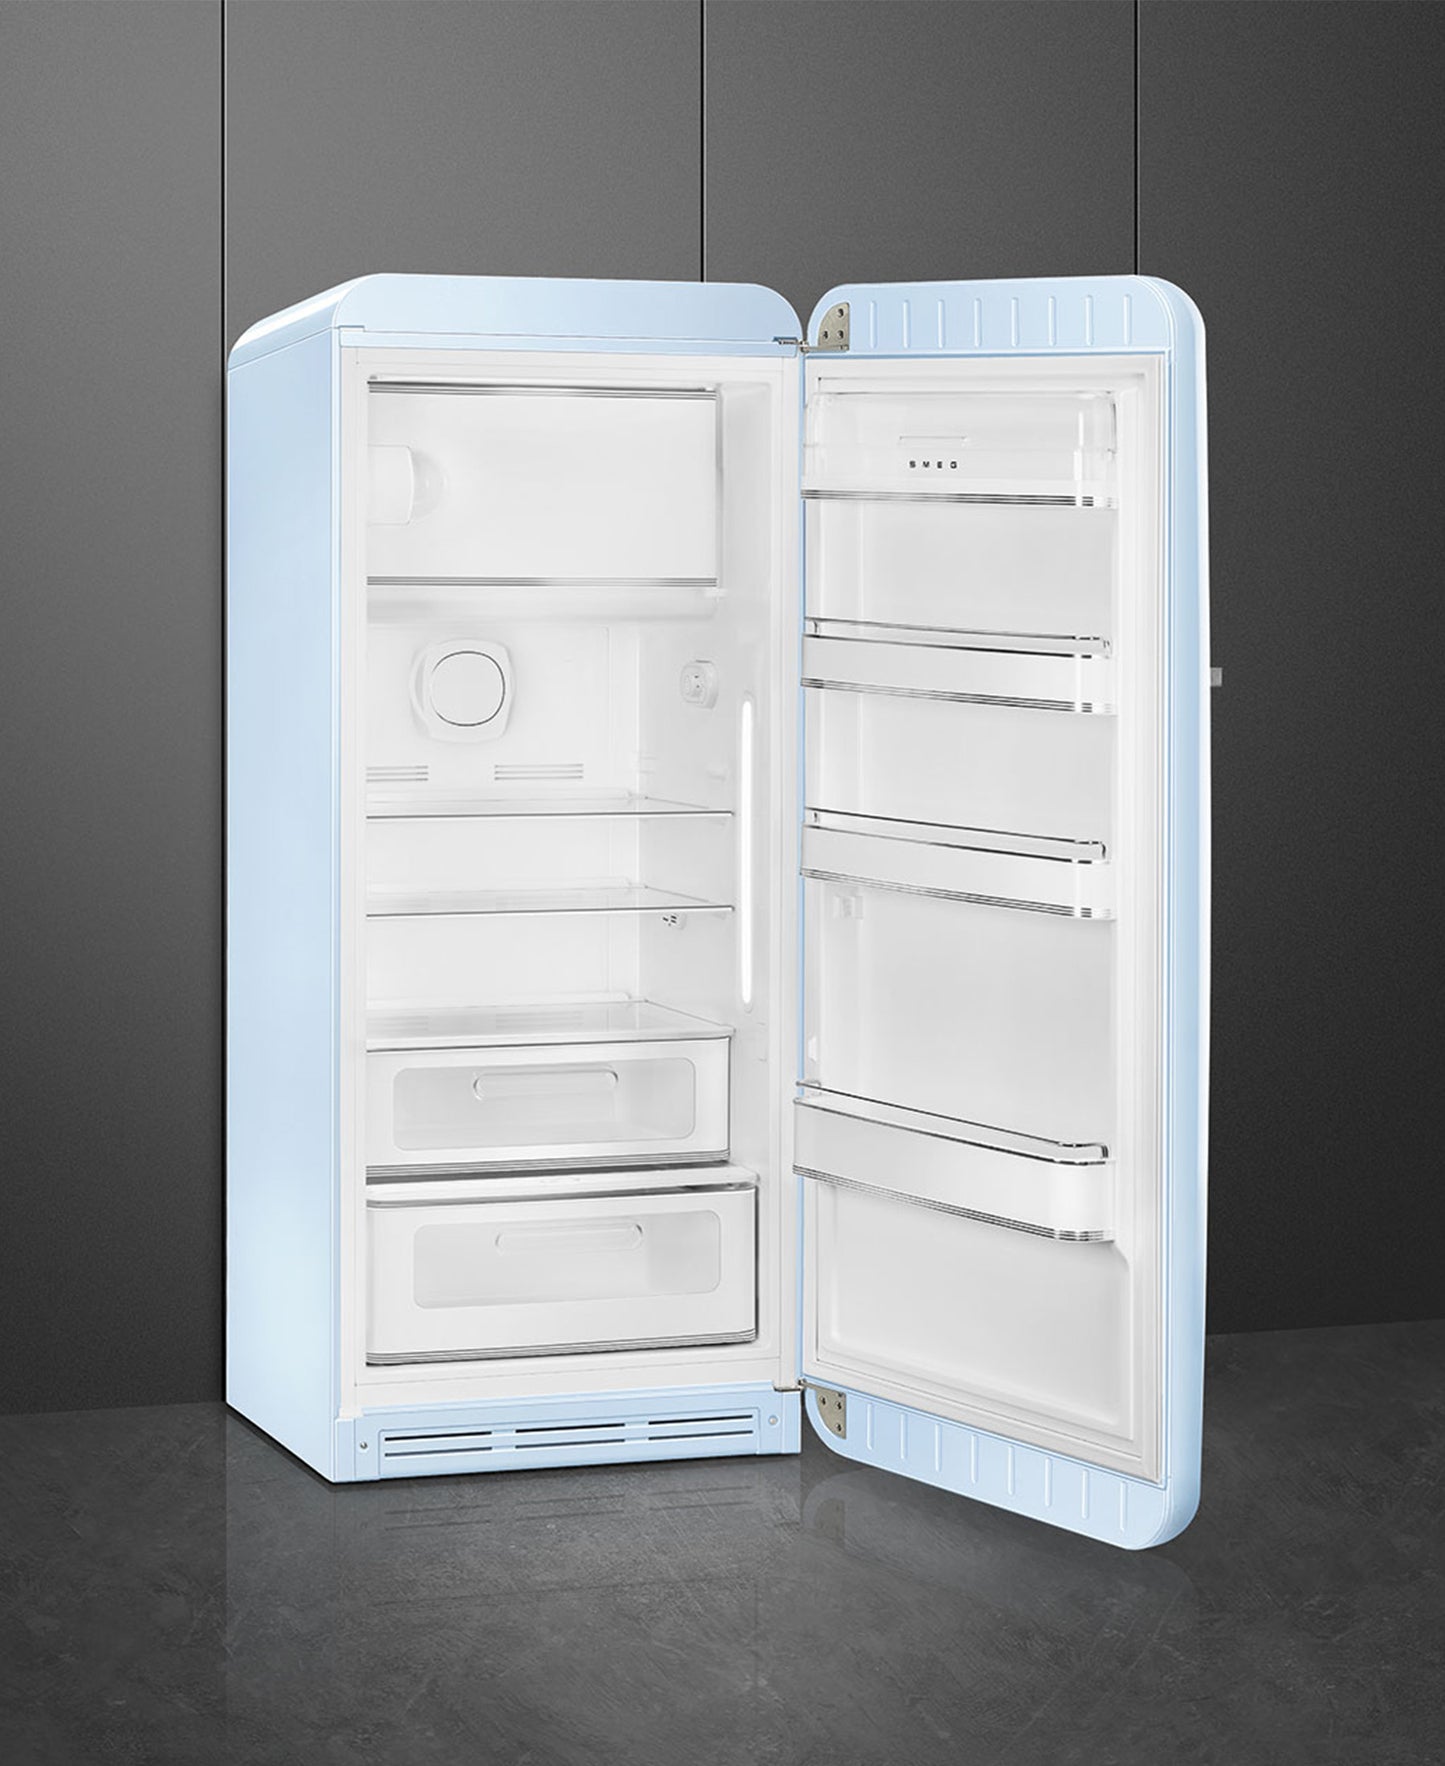 Smeg Retro Refrigerator - Pastel Blue